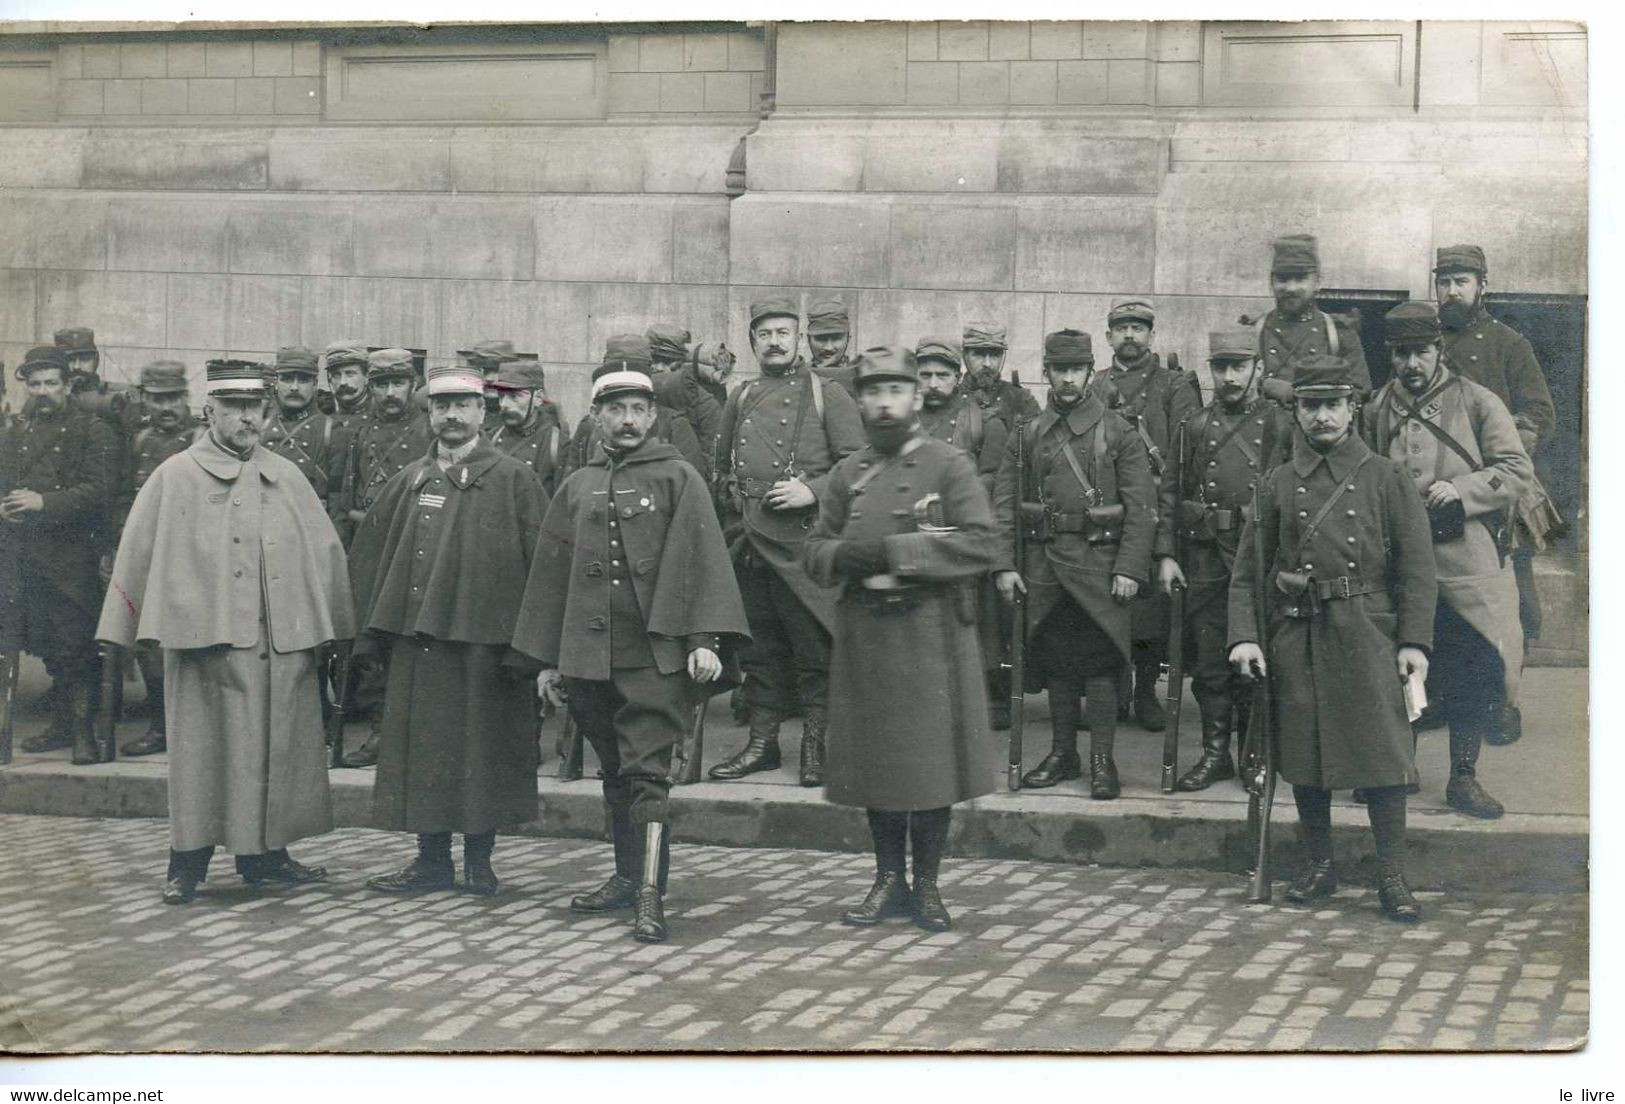 CPA PHOTO MILITARIA WW1 GROUPE DE MILITAIRES AVEC OFFICIERS 1915 CHIFFRE 20 SUR LES COLS